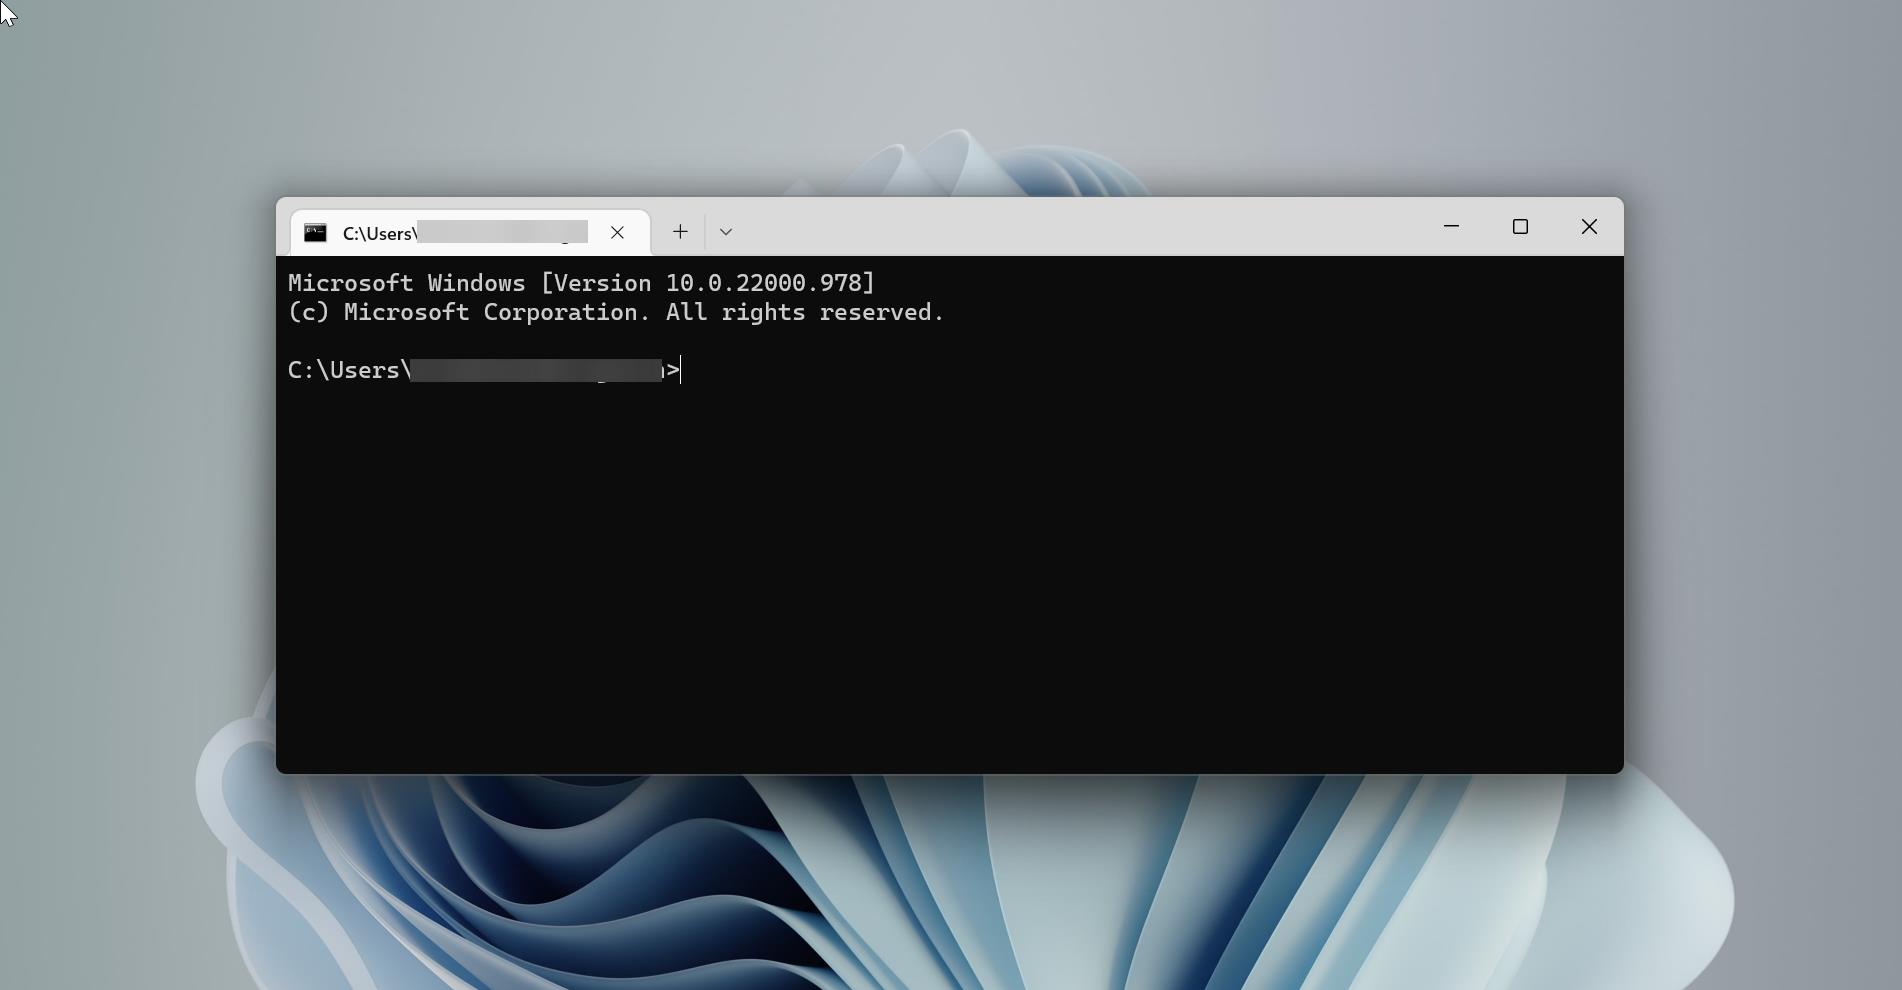 set terminal as a default command line tool